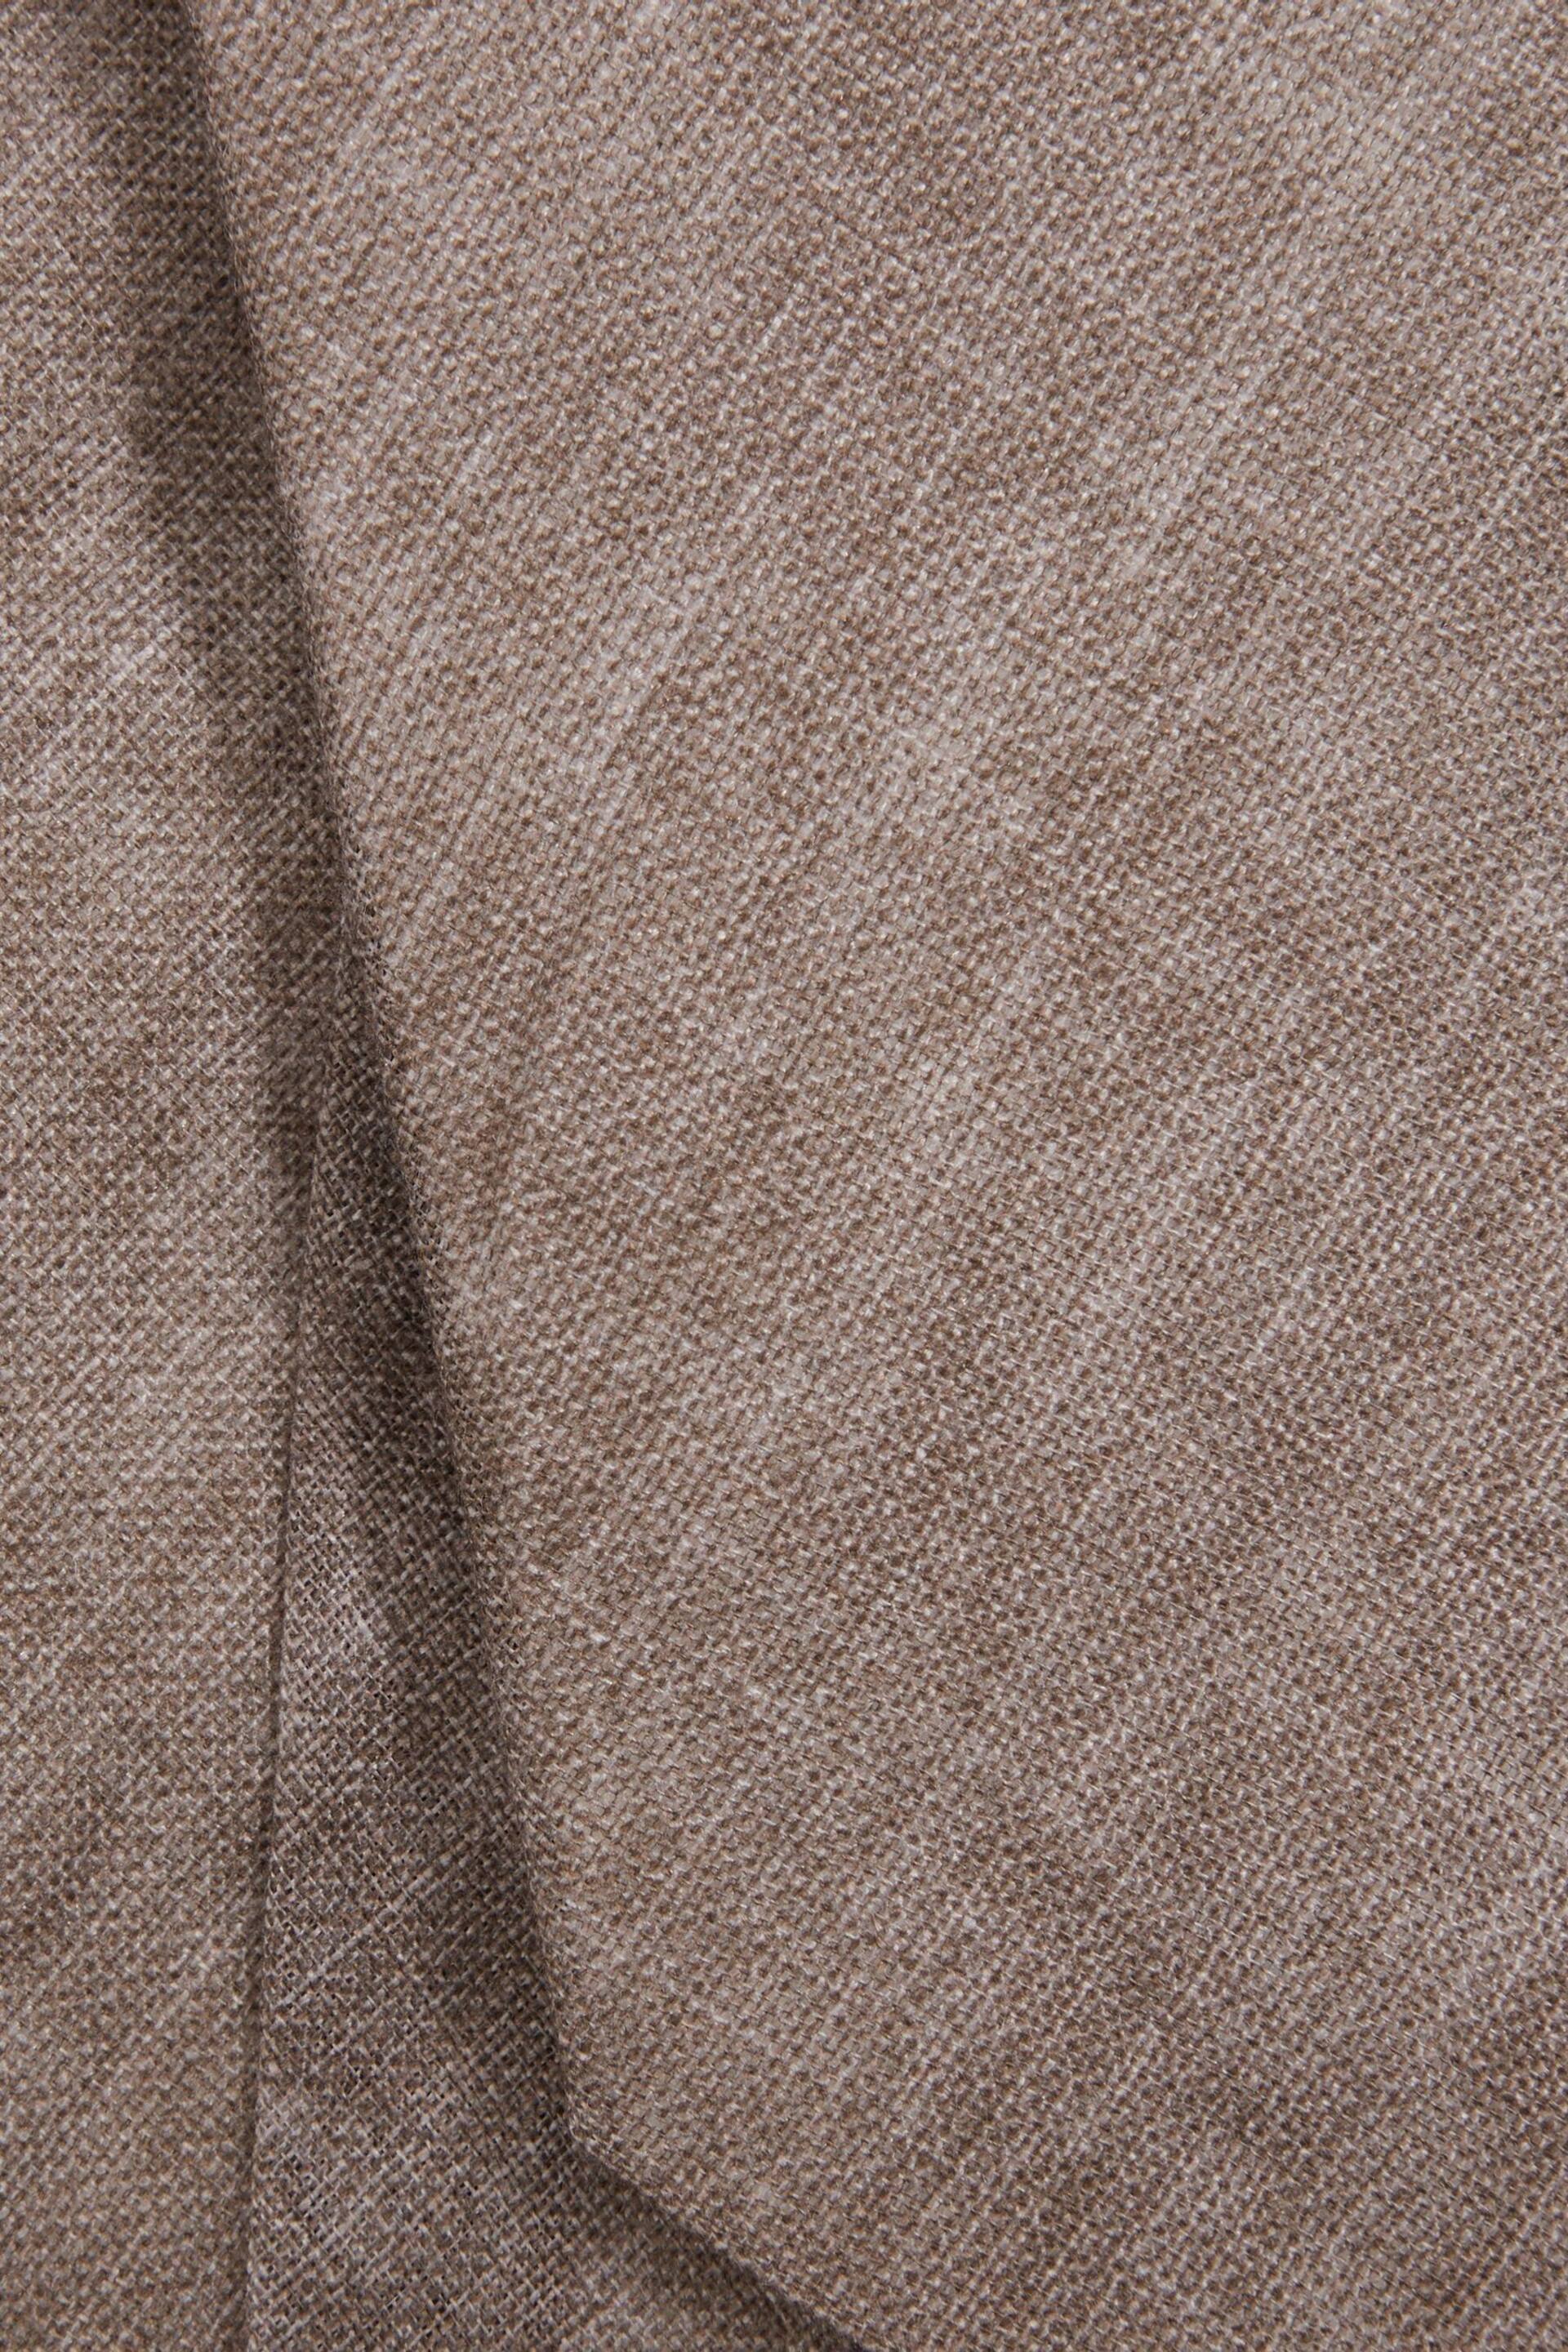 Reiss Light Brown Melange Vitali Linen Tie - Image 5 of 5